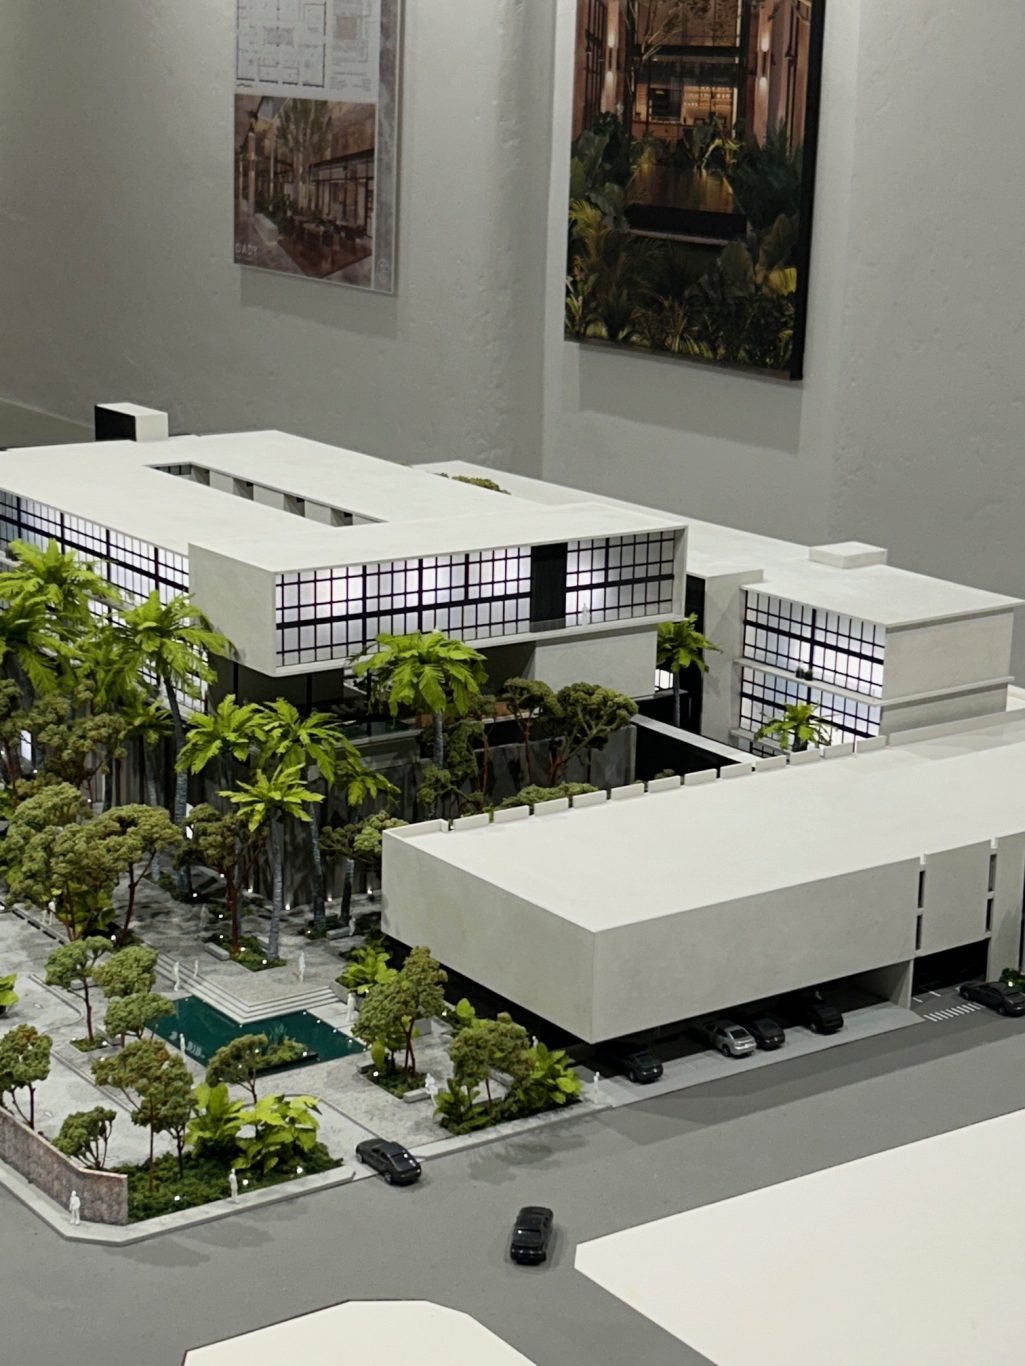 Maqueta del Centro de Arte y diseño de Yucatán, proyecto del arquitecto Henry Ponce.